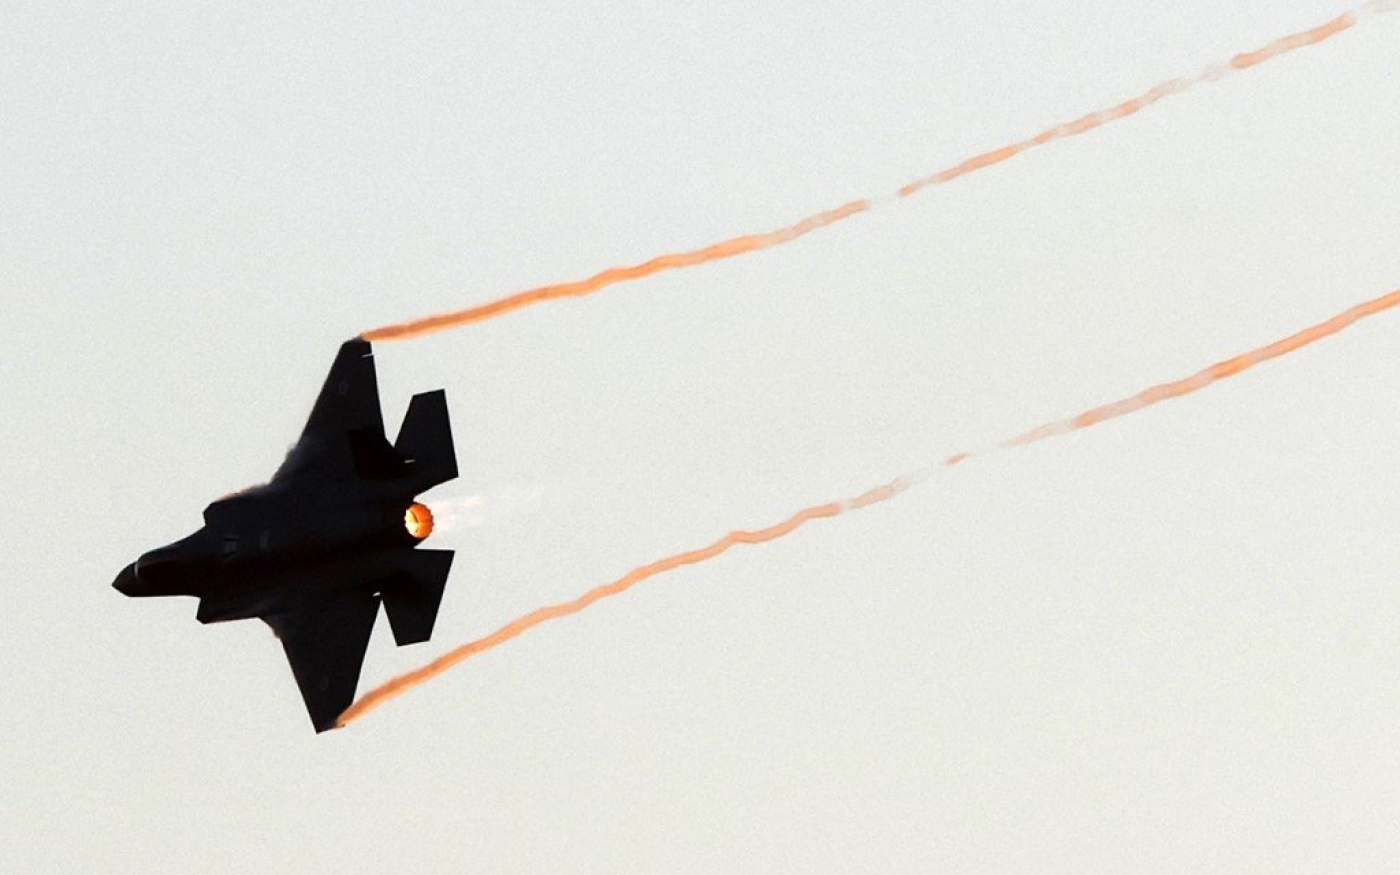 Un avion de combat F-35 Lightning II en représentation lors d’une cérémonie dans le désert israélien du Néguev, le 24 juin 2021 (AFP)